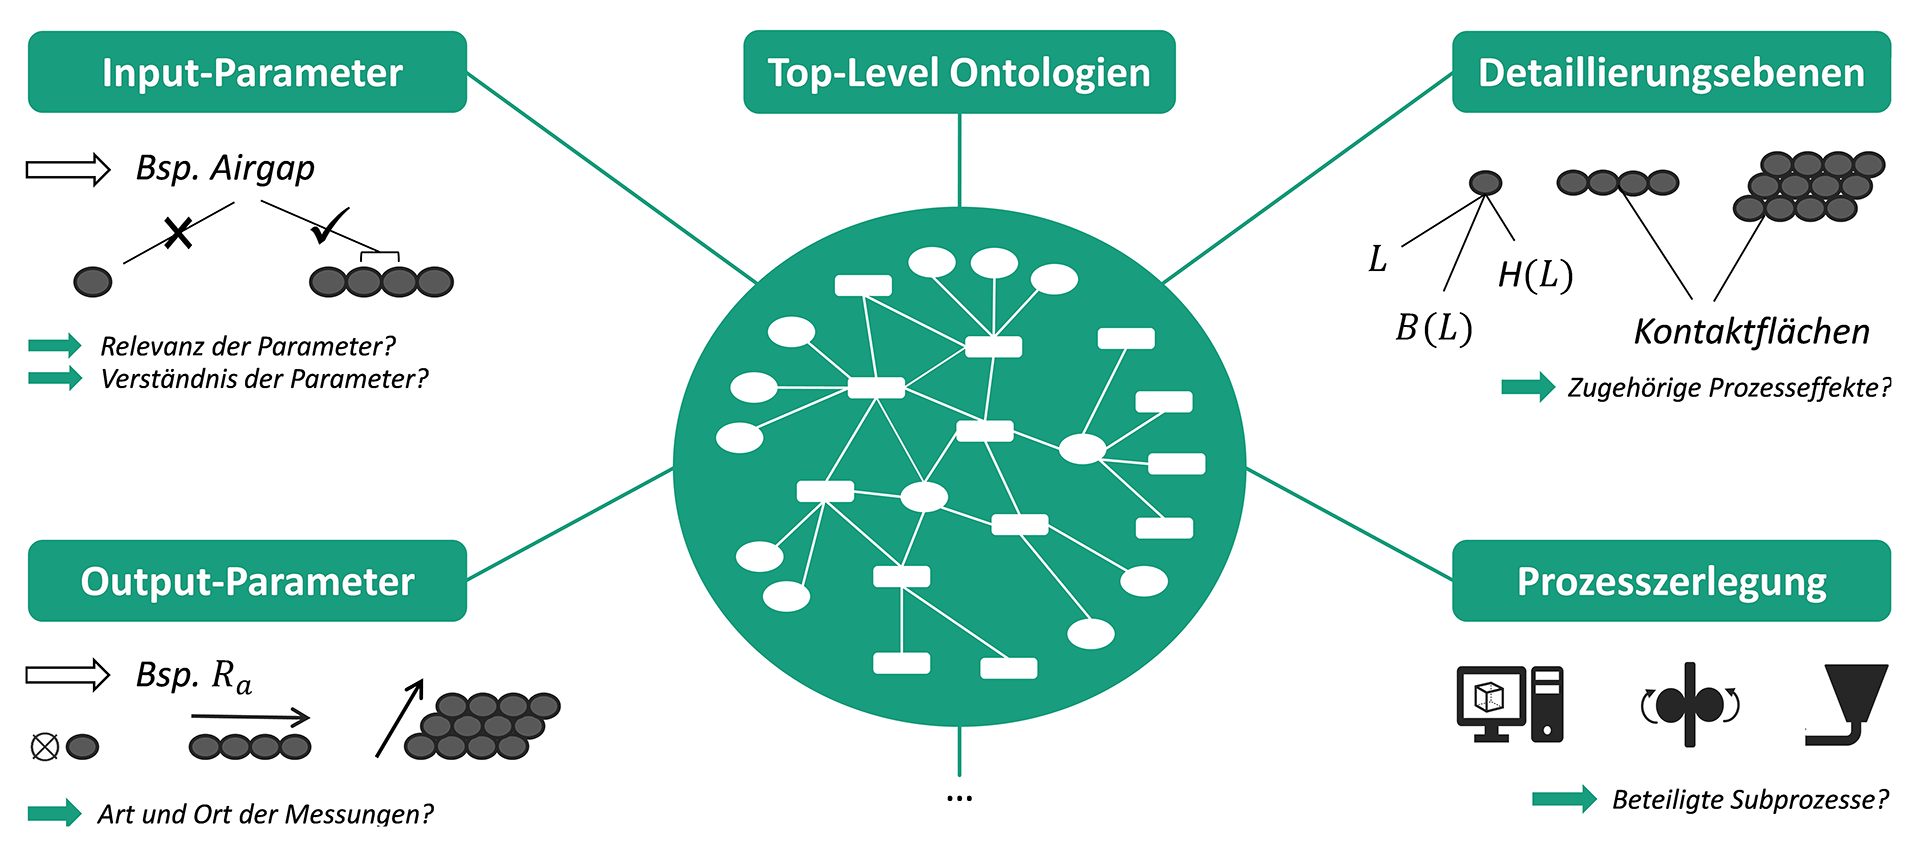 Erstellung einer Ontologiestruktur